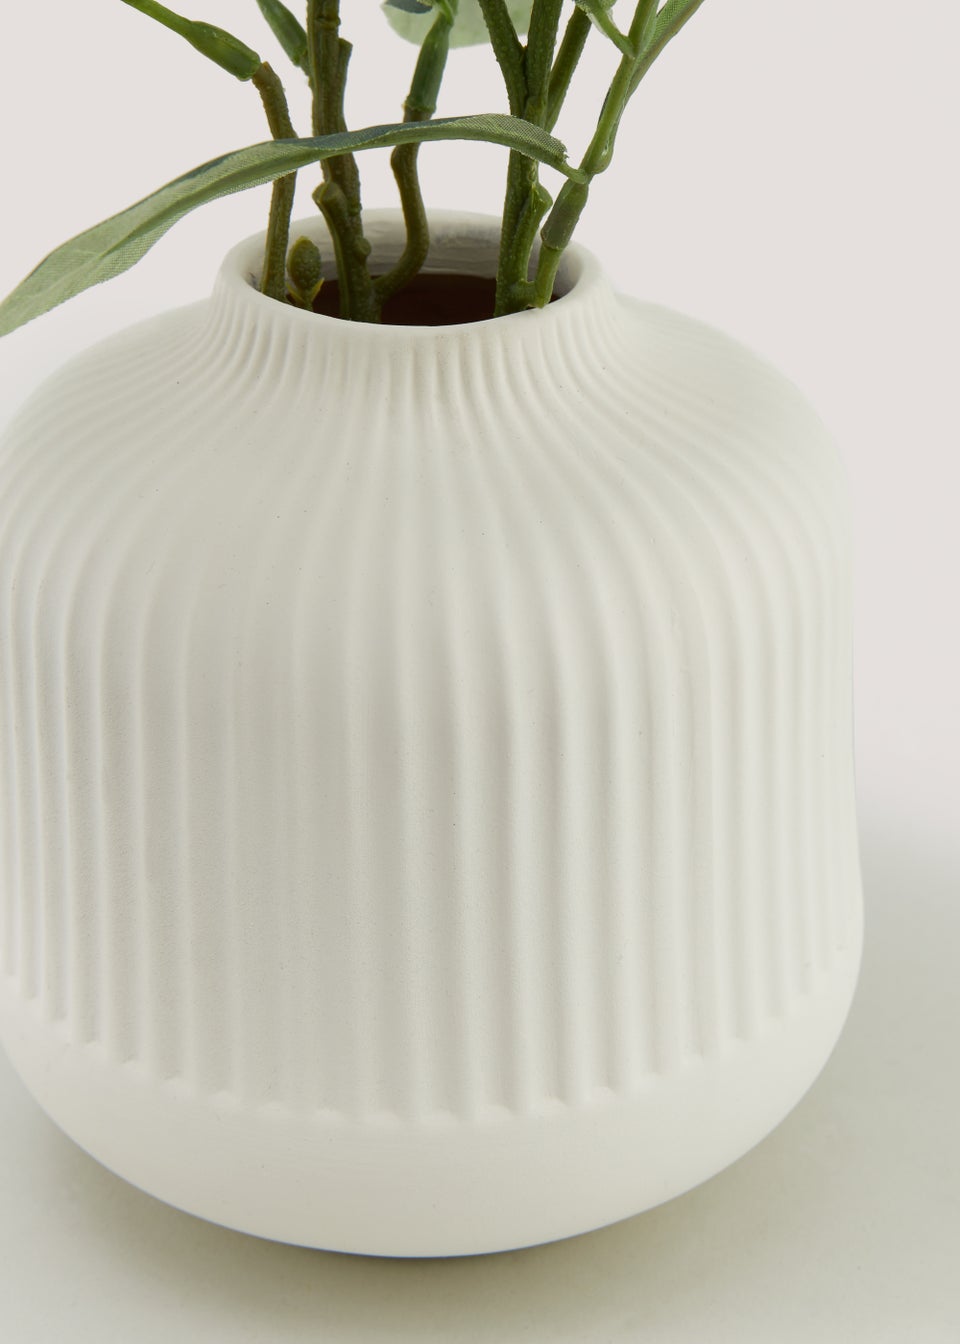 Olive Branch in Cream Ribbed Vase (38cm x 9cm)